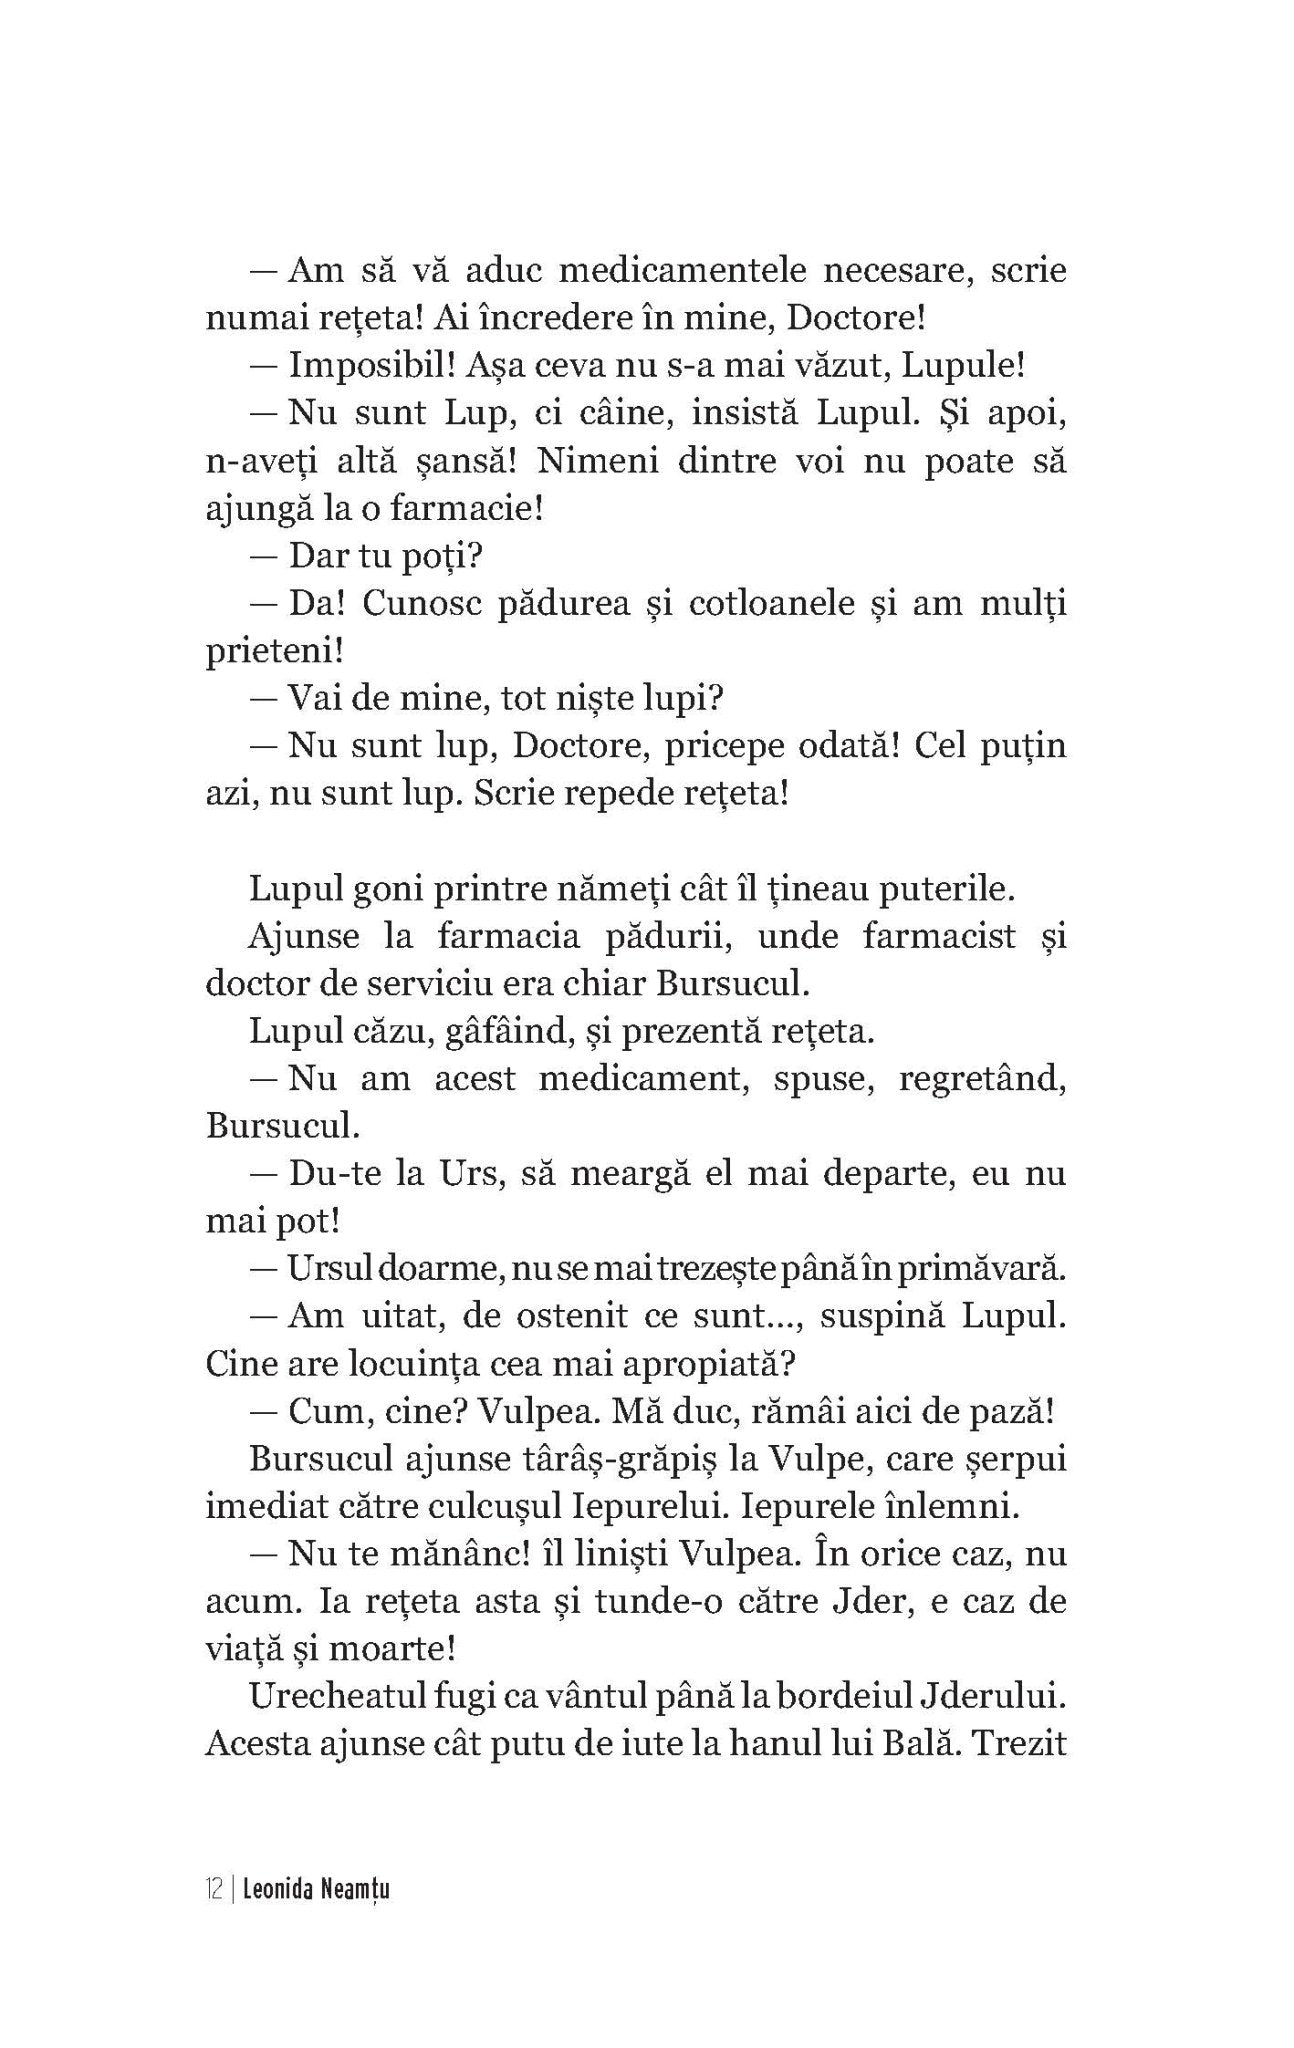 Deodata, Inevitabilul; Norii De Diamant - Ed. digitala - PDF - Publisol.ro